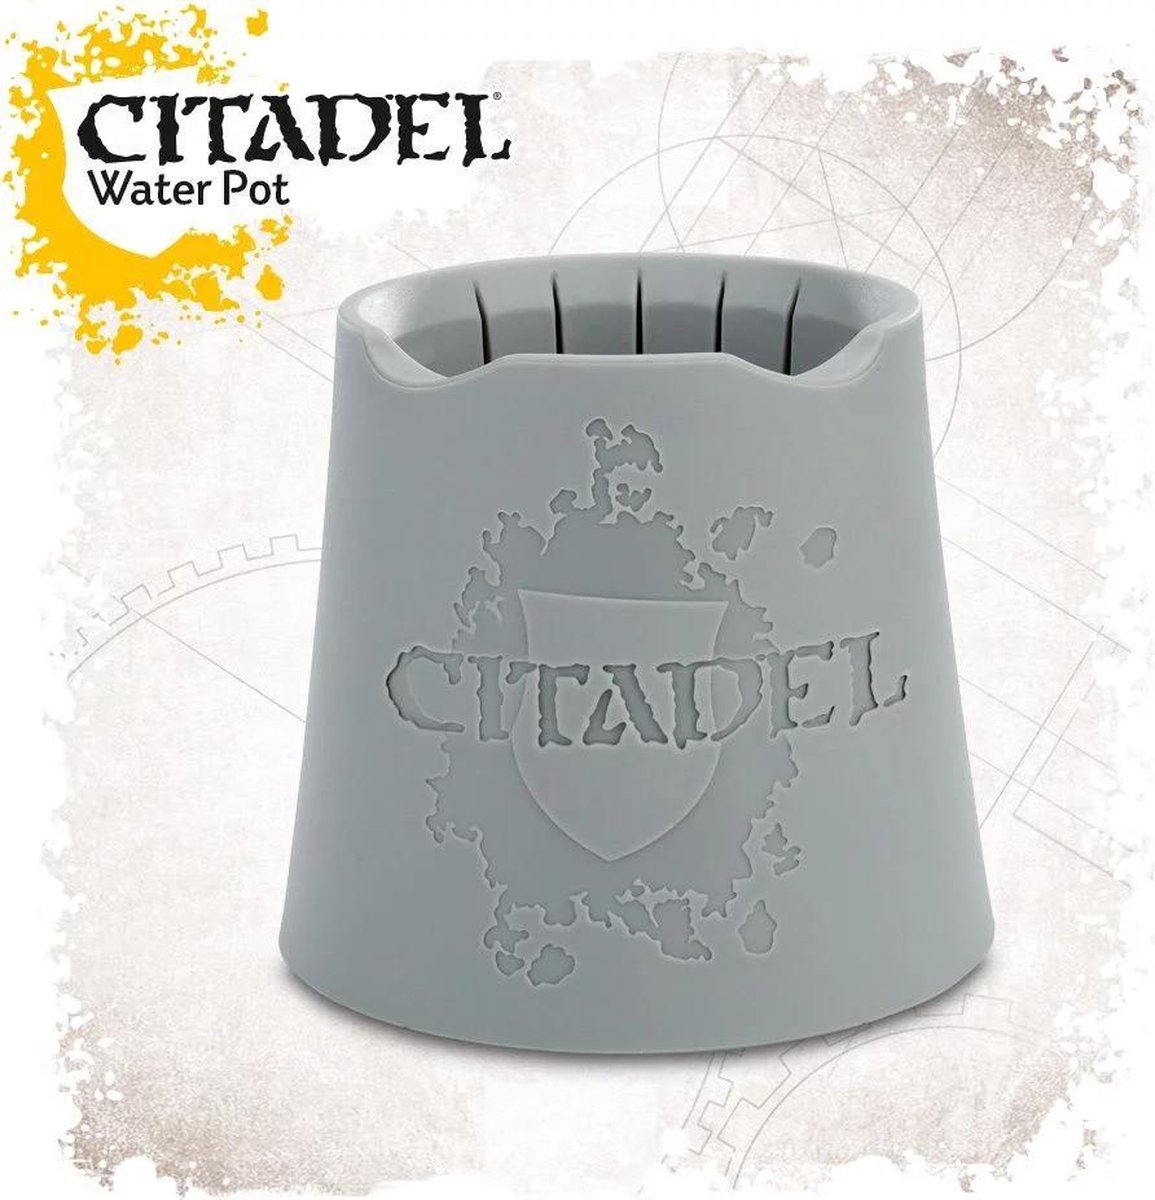 Water Pot (Citadel) - Citadel